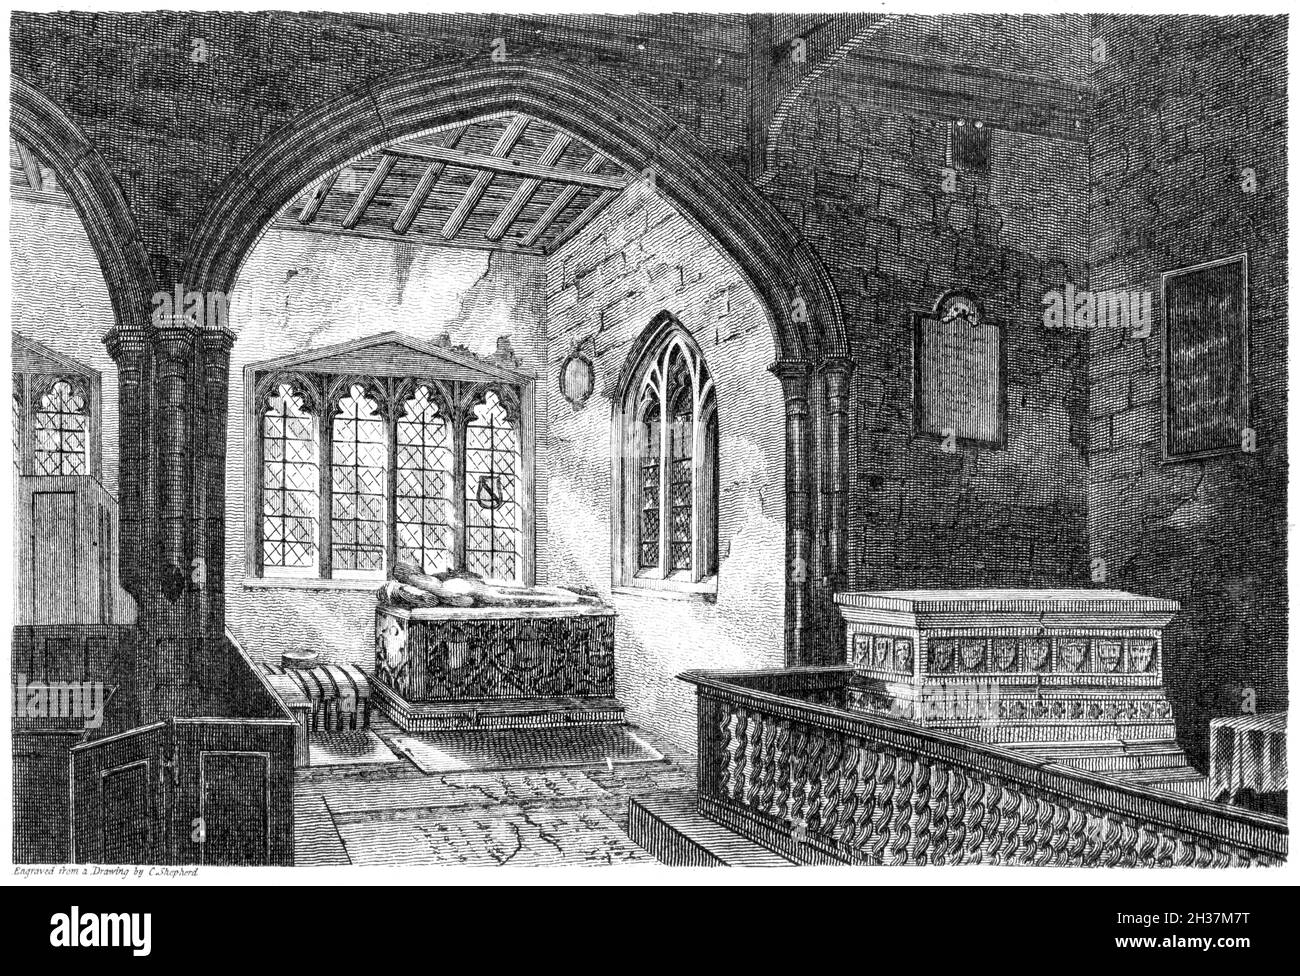 Eine Gravur des Inneren der Kings Langley Church, Herts. Großbritannien scannte mit hoher Auflösung aus einem Buch, das 1812 gedruckt wurde. Für urheberrechtlich frei gehalten. Stockfoto